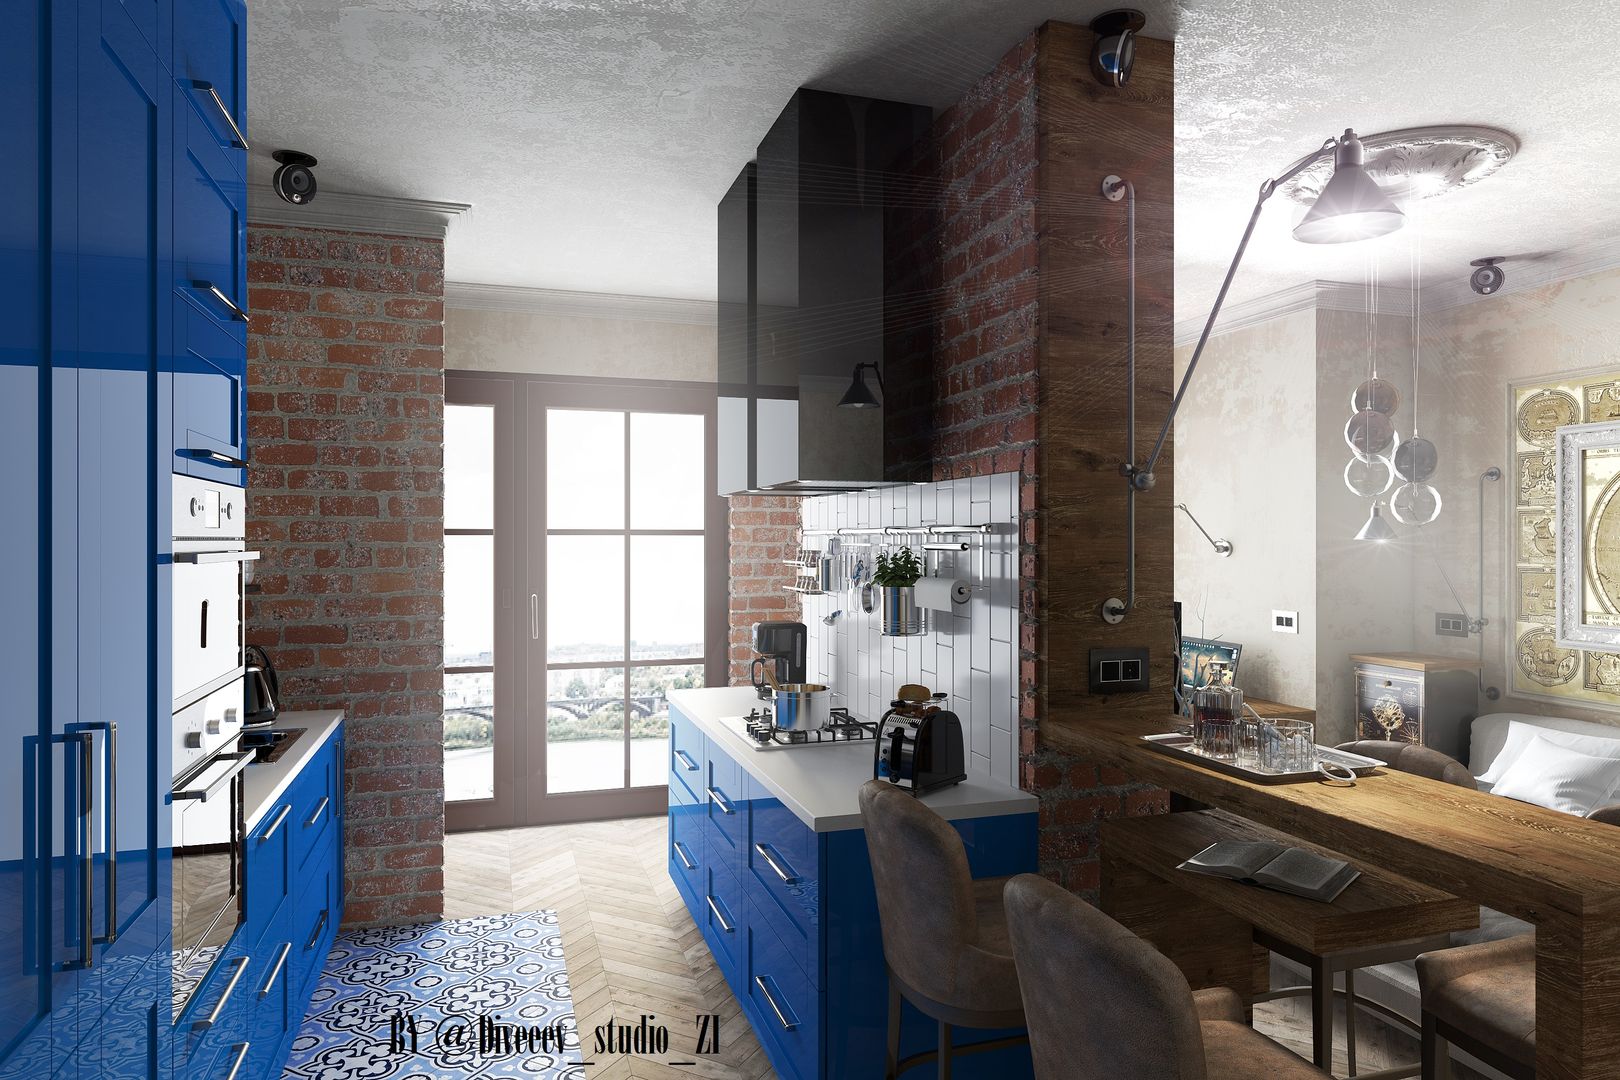 Квартира студия, Diveev_studio#ZI Diveev_studio#ZI Nhà bếp phong cách công nghiệp